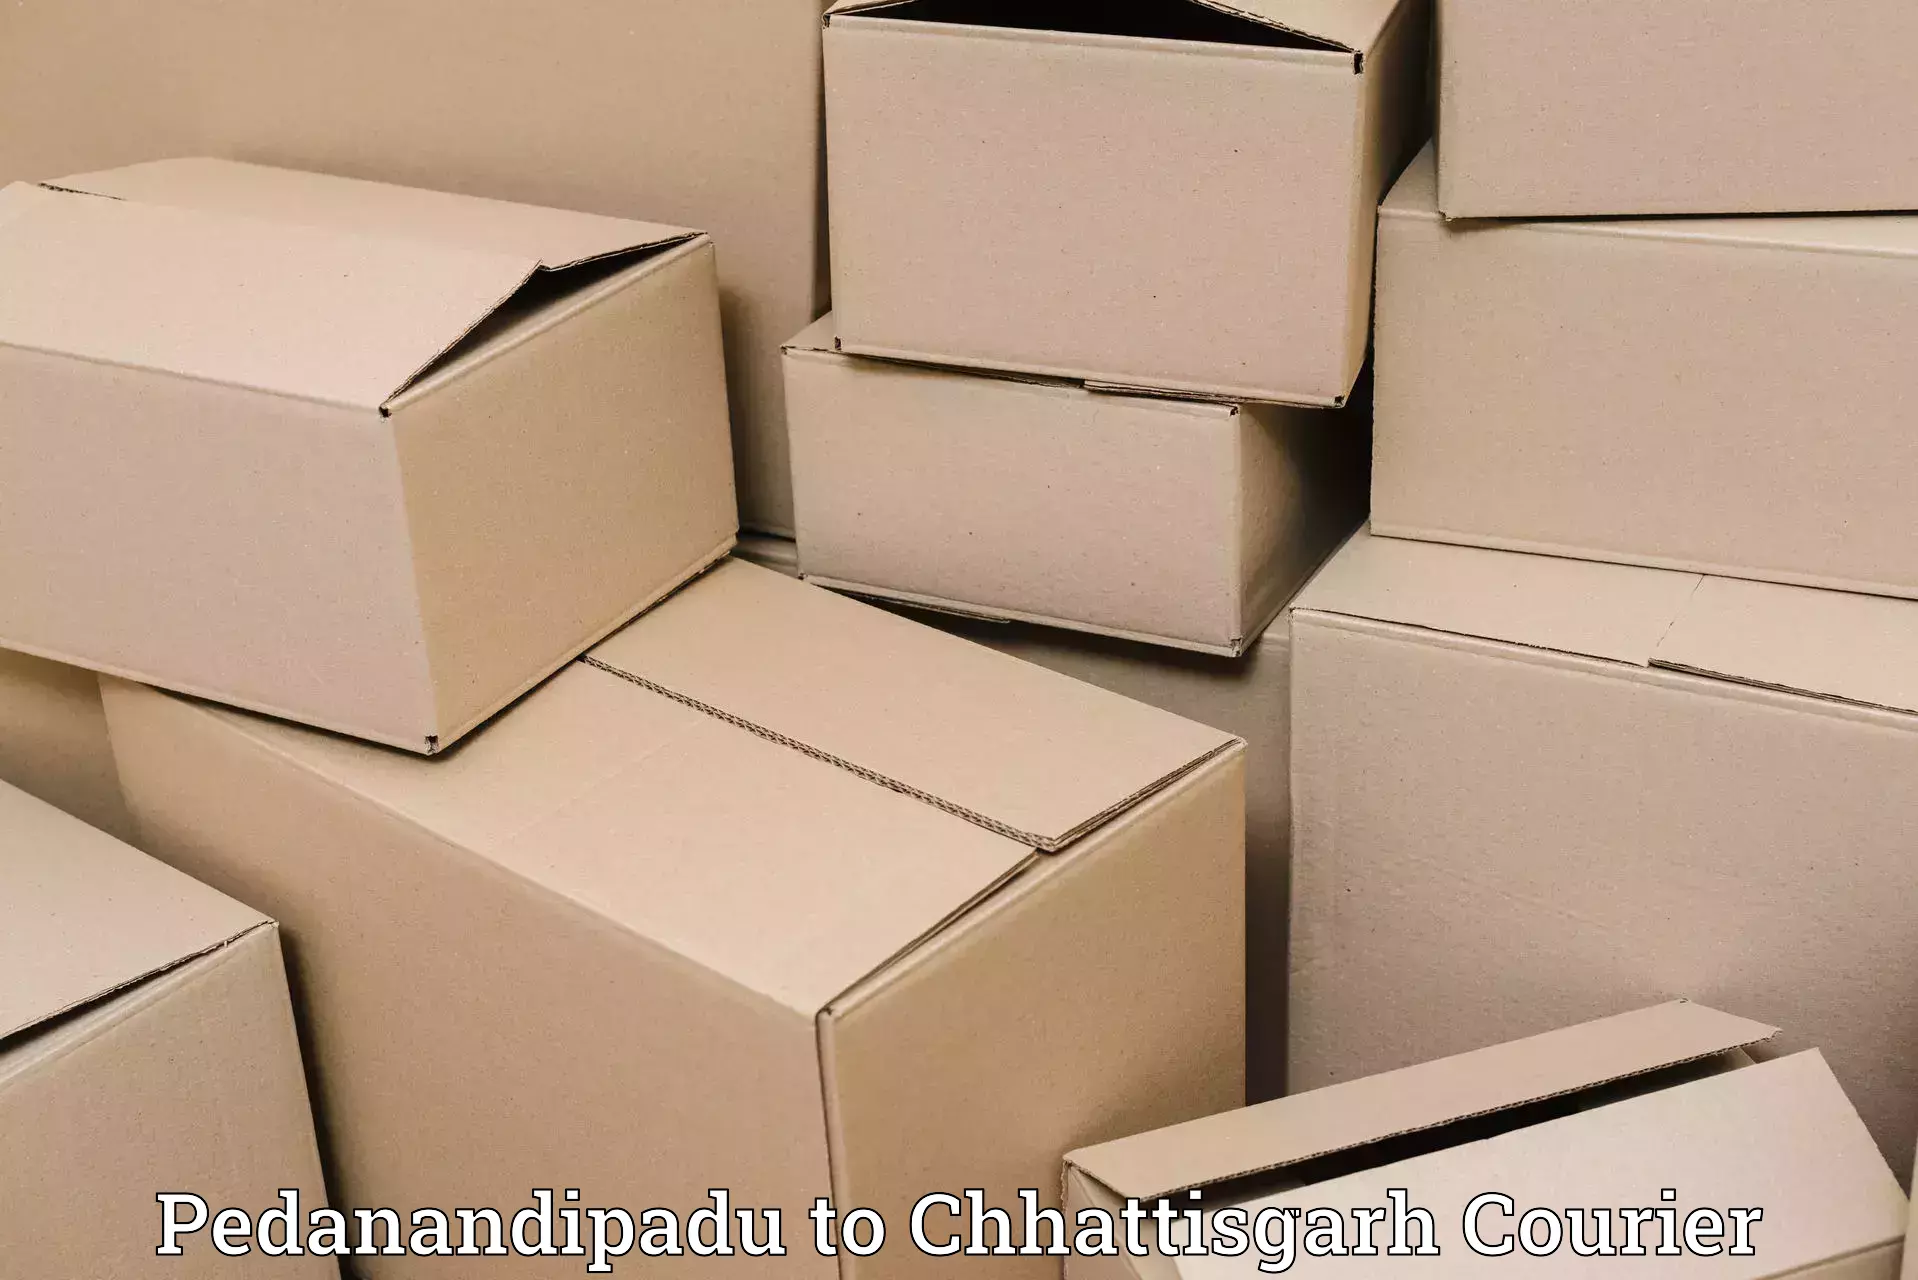 Courier service comparison Pedanandipadu to Mahasamund